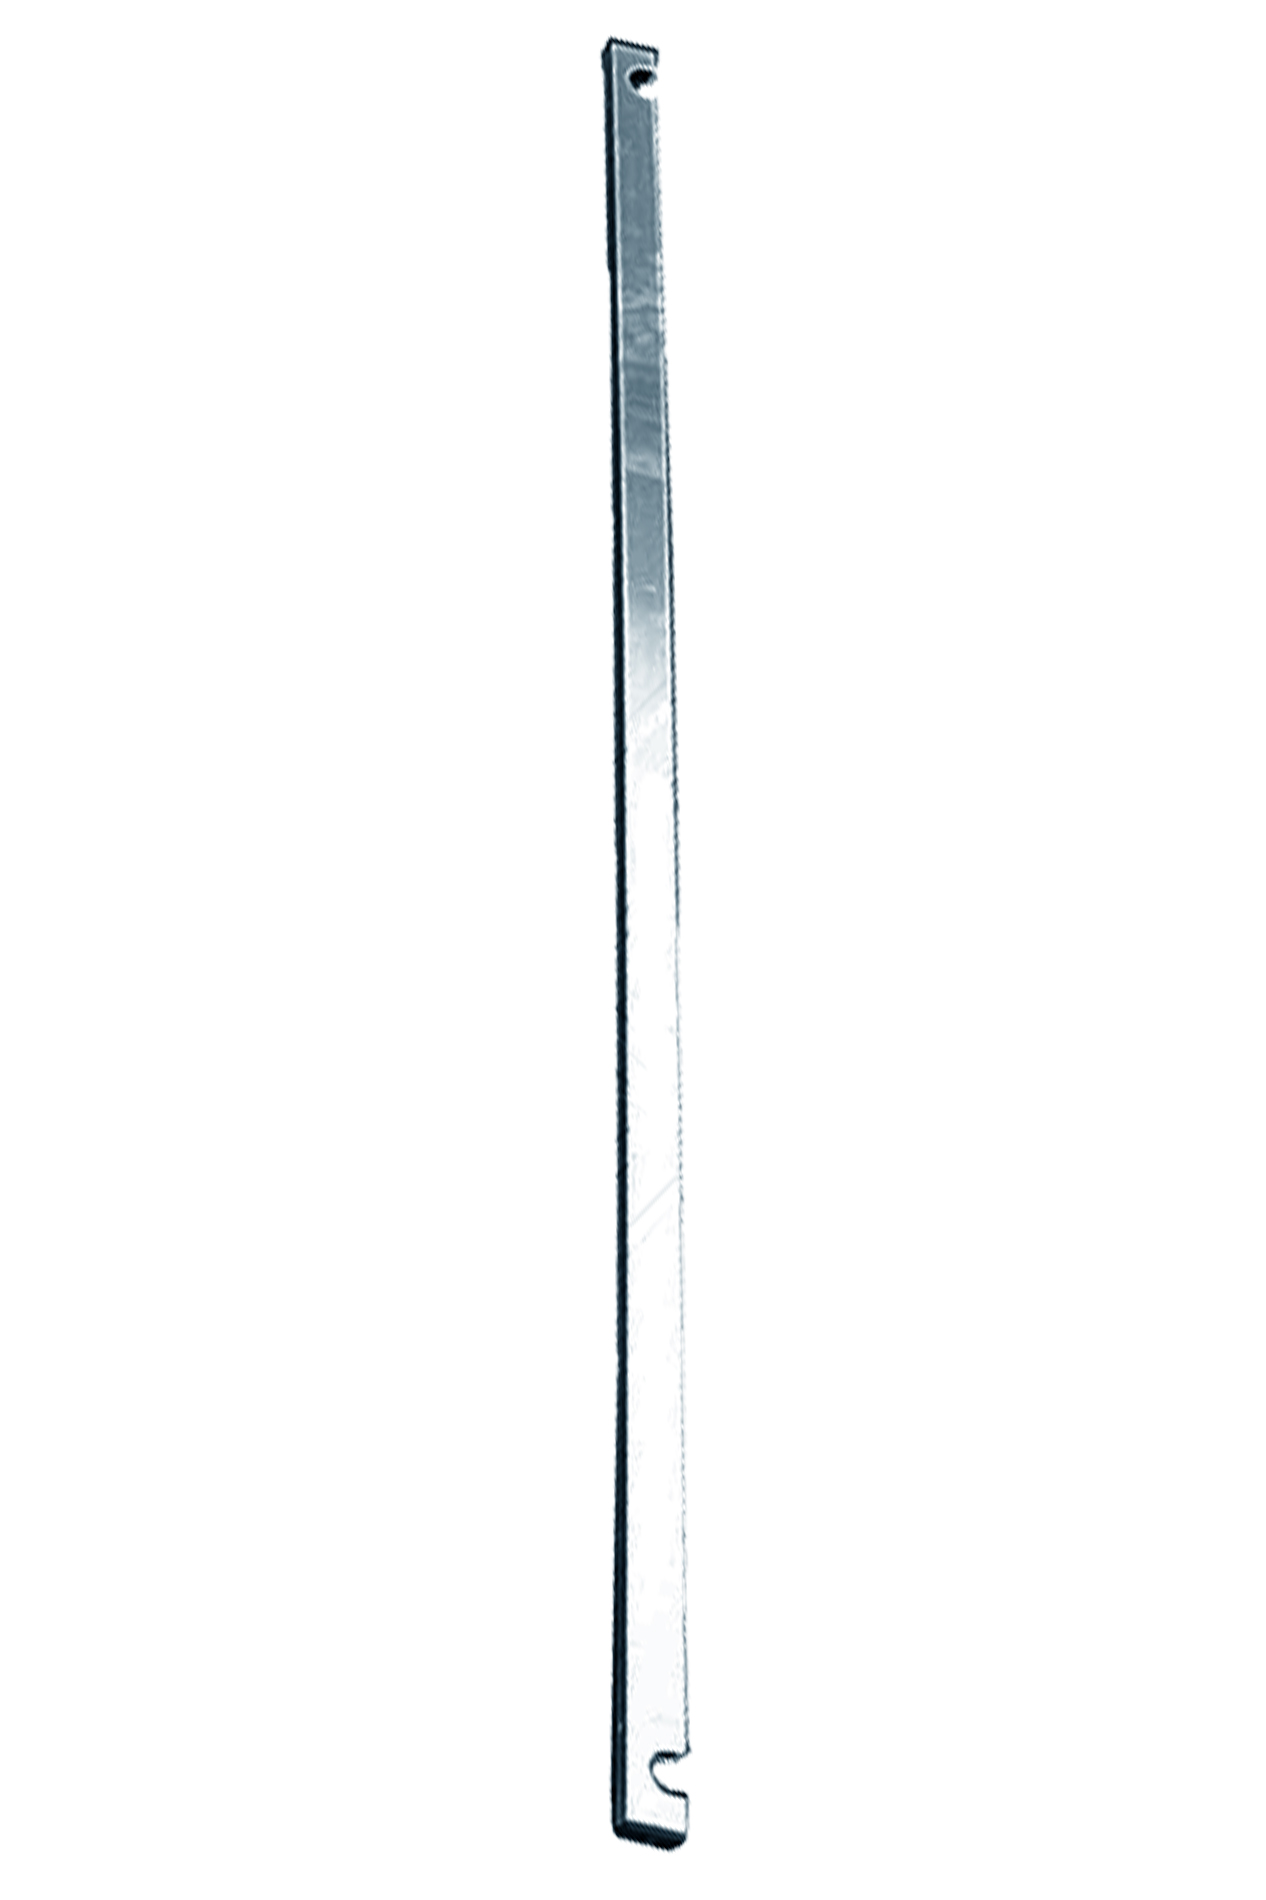 Дополнительное изображение STABILO 100-3 Передвижные подмости, рабочая высота 13,3 м, размер площадки (3.0x0.75 м)